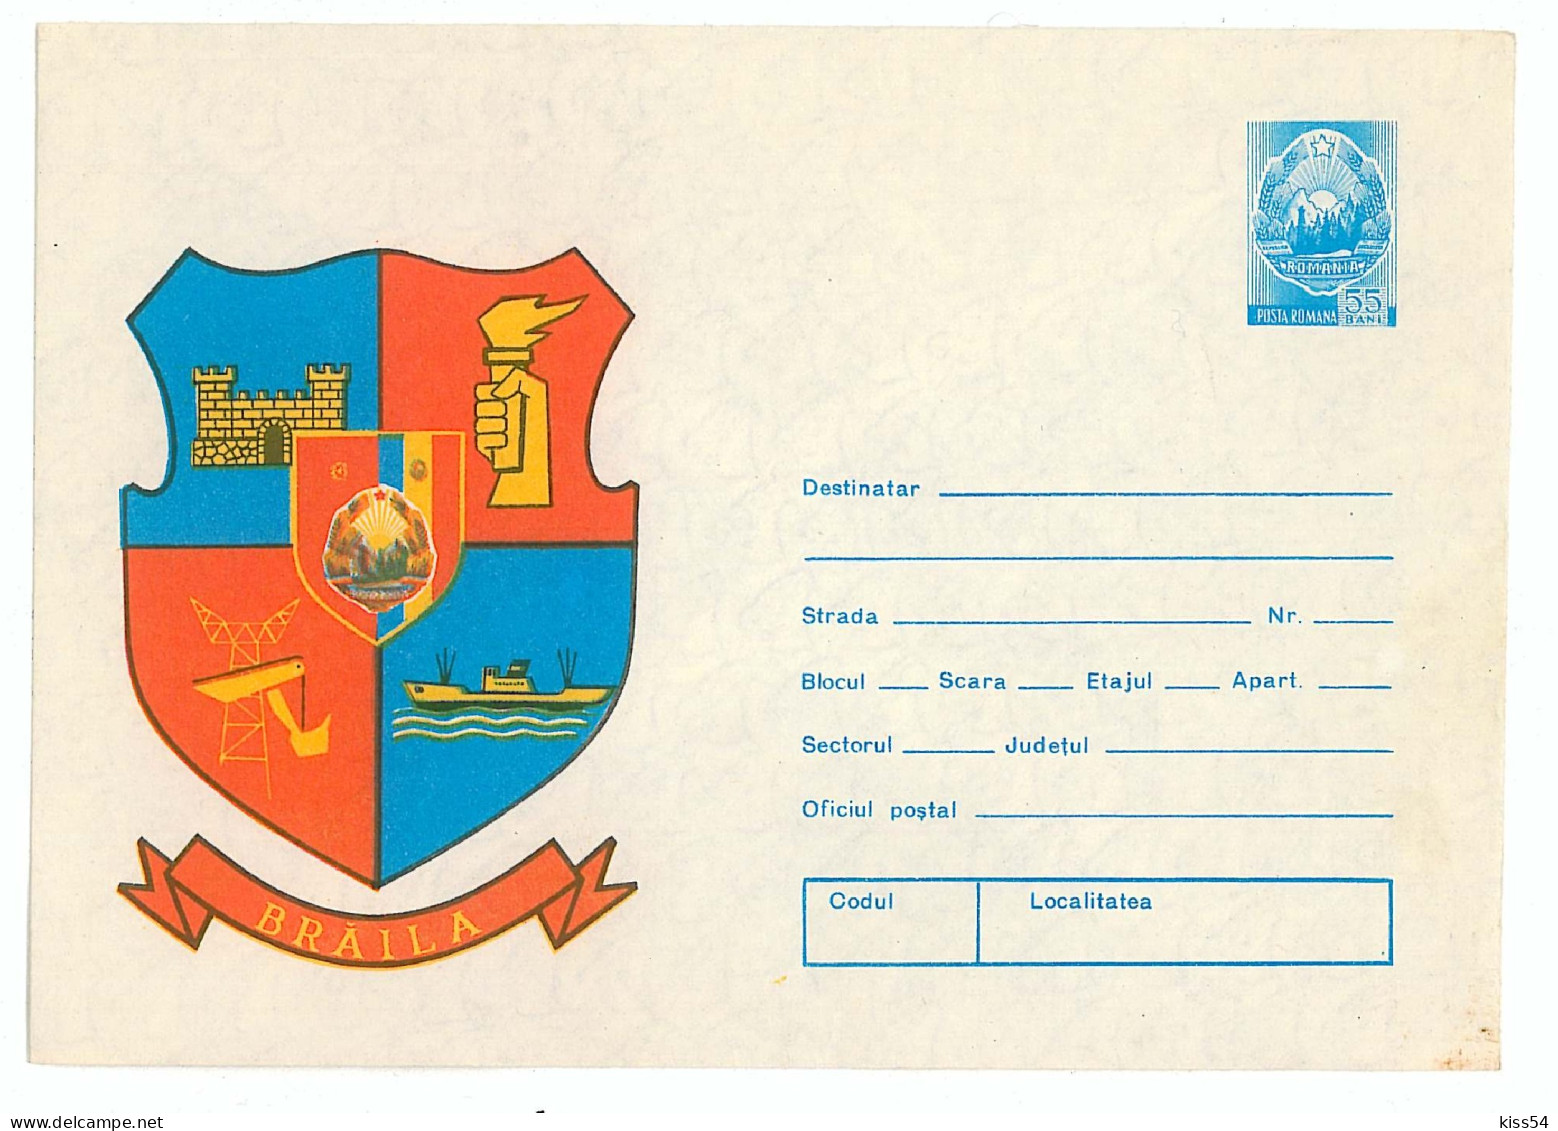 IP 76 - 157 SHIP, Heraldry BRAILA - Stationery - Unused - 1976 - Enteros Postales